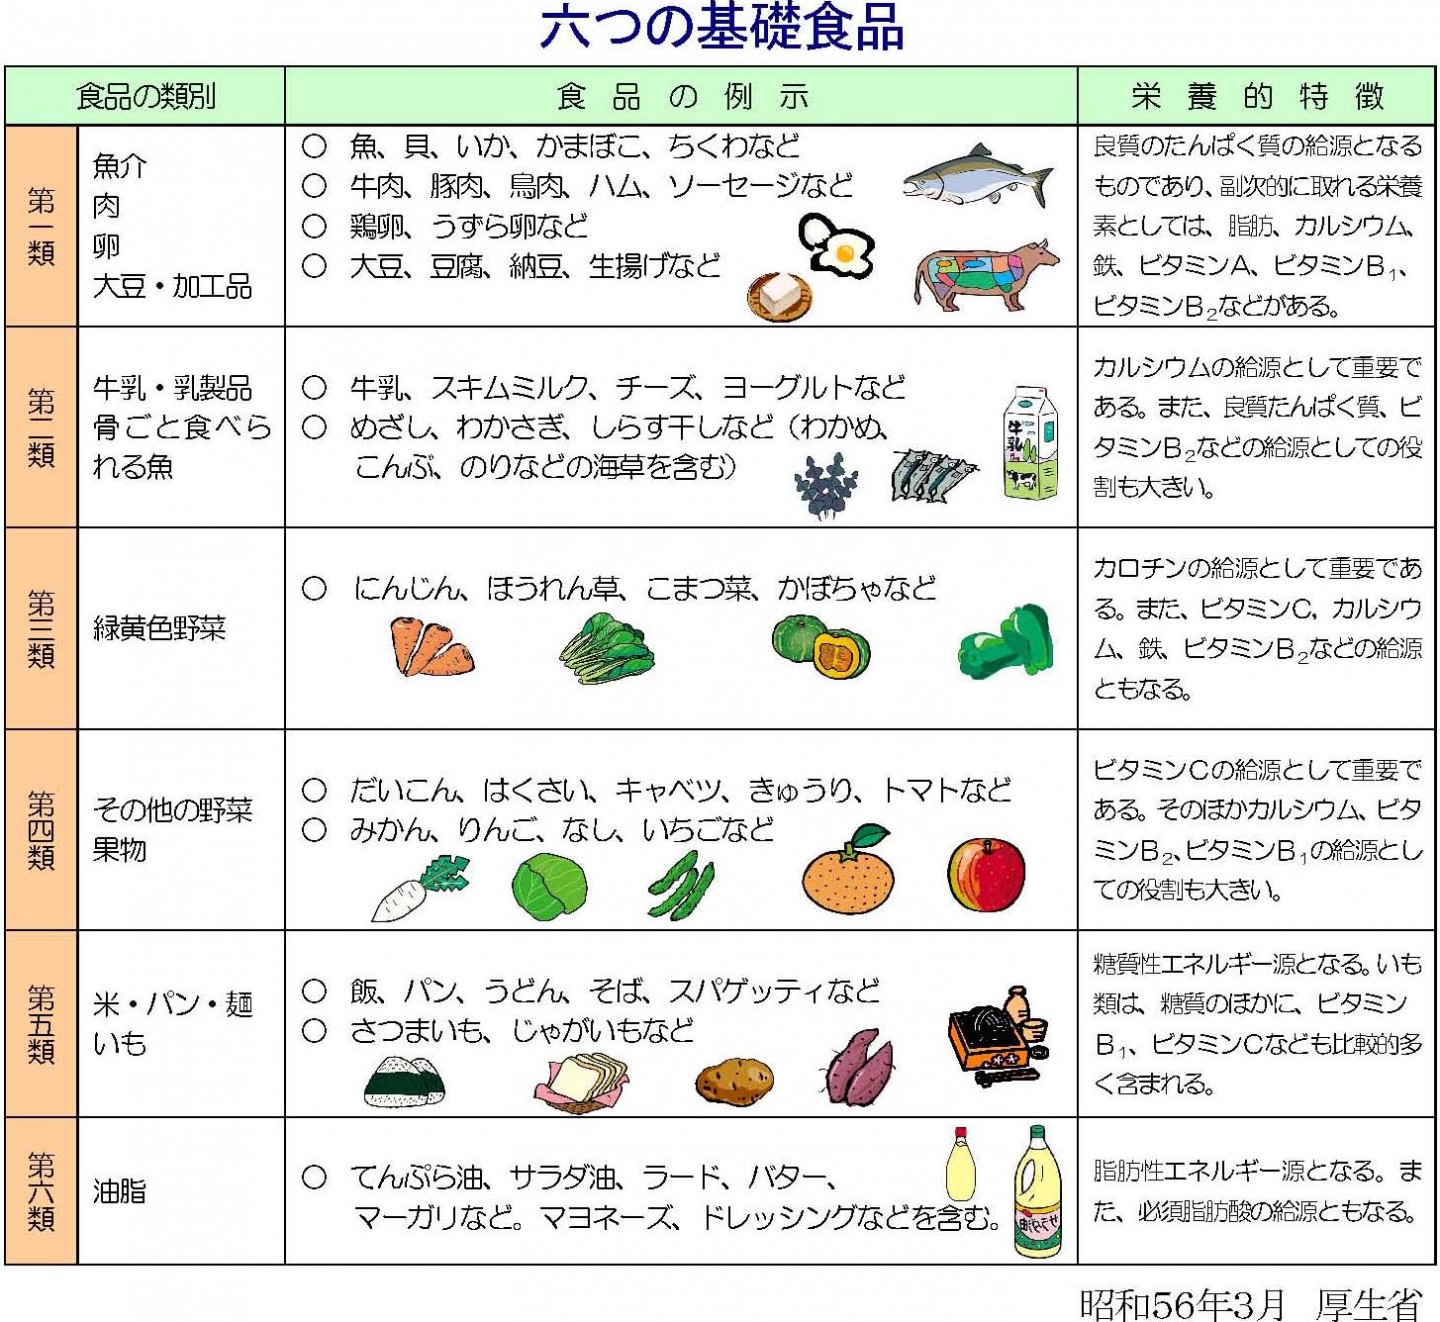 6つの基礎食品と献立の作り方 公益社団法人 千葉県栄養士会